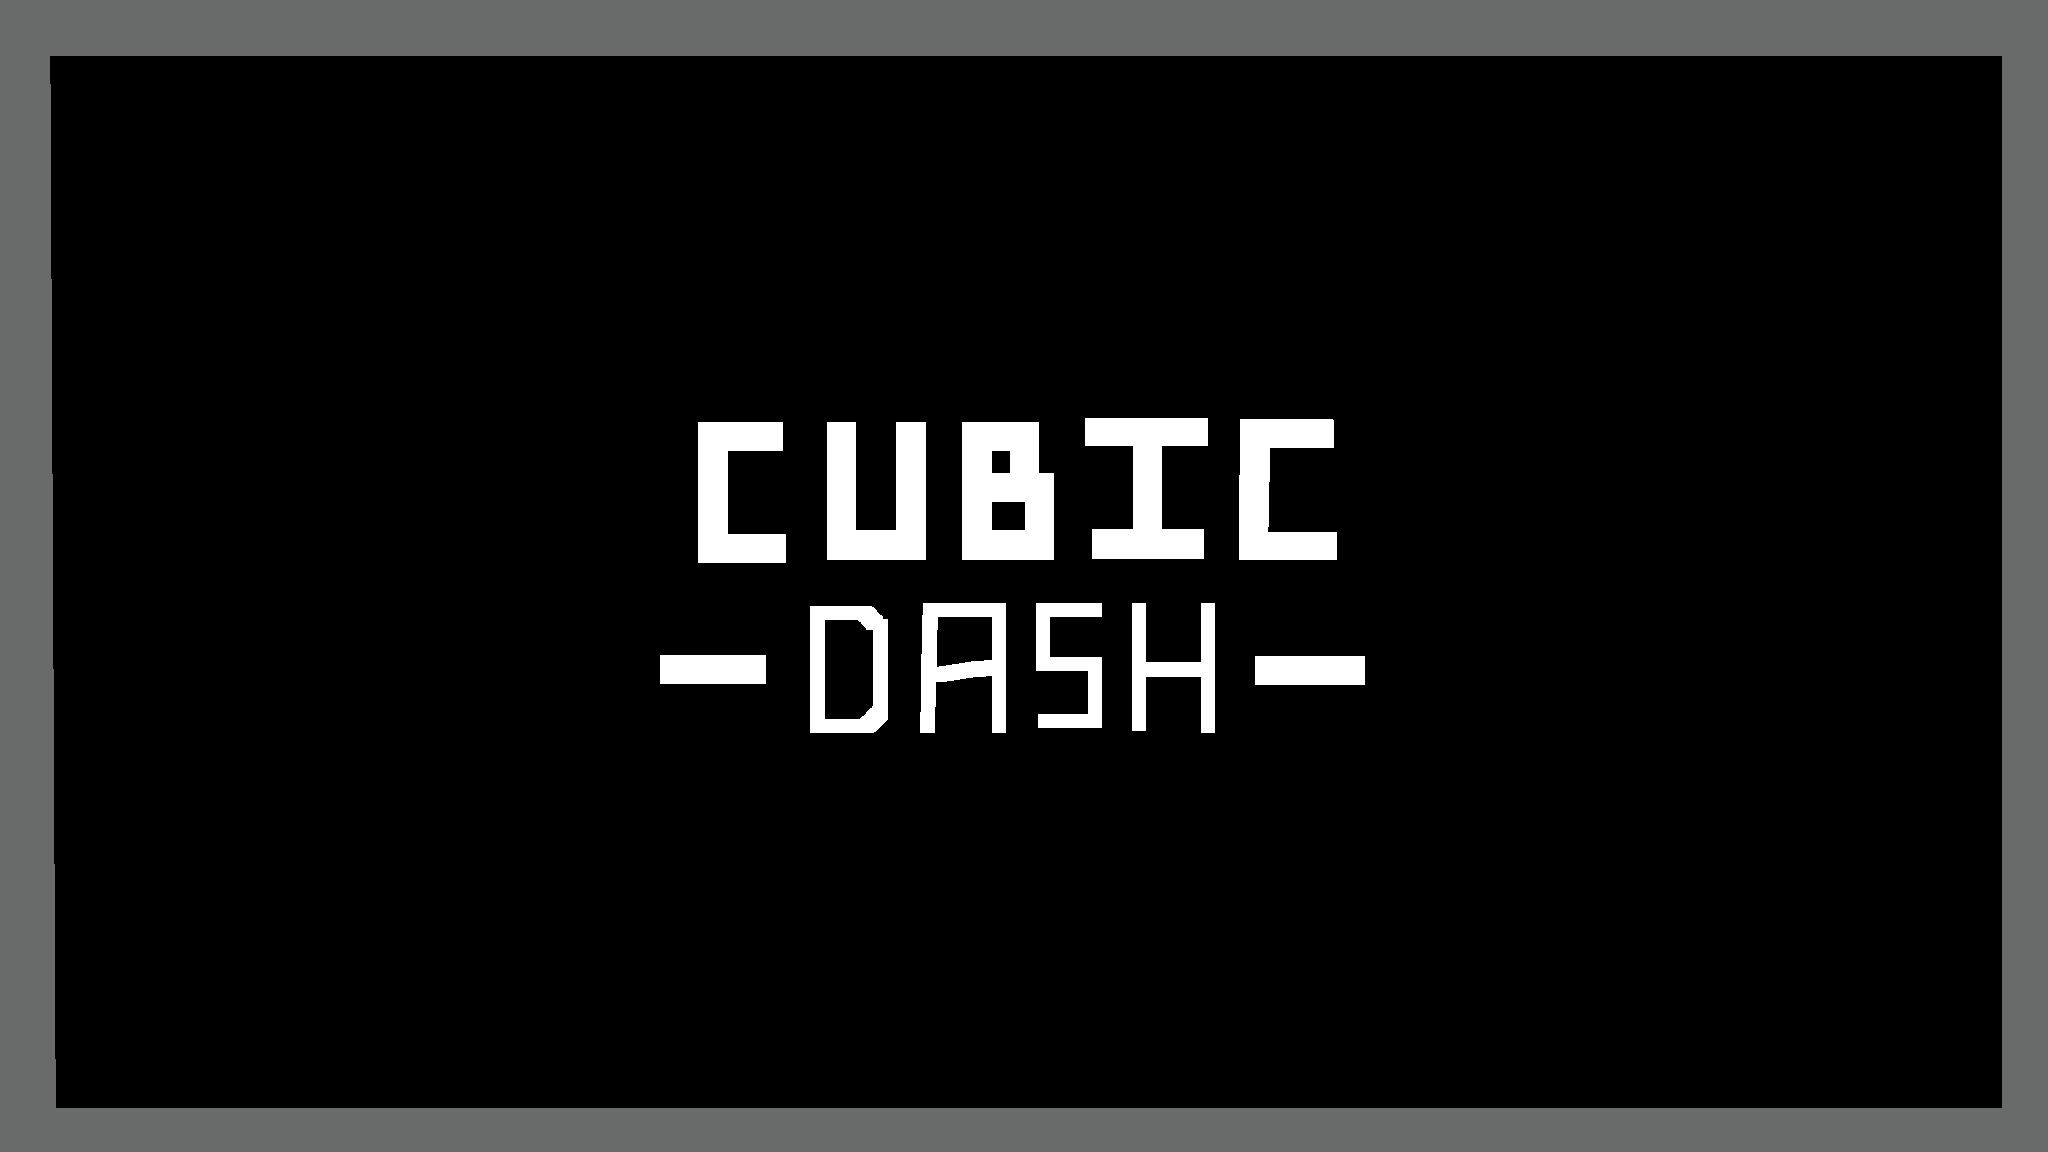 CUBIC DASH